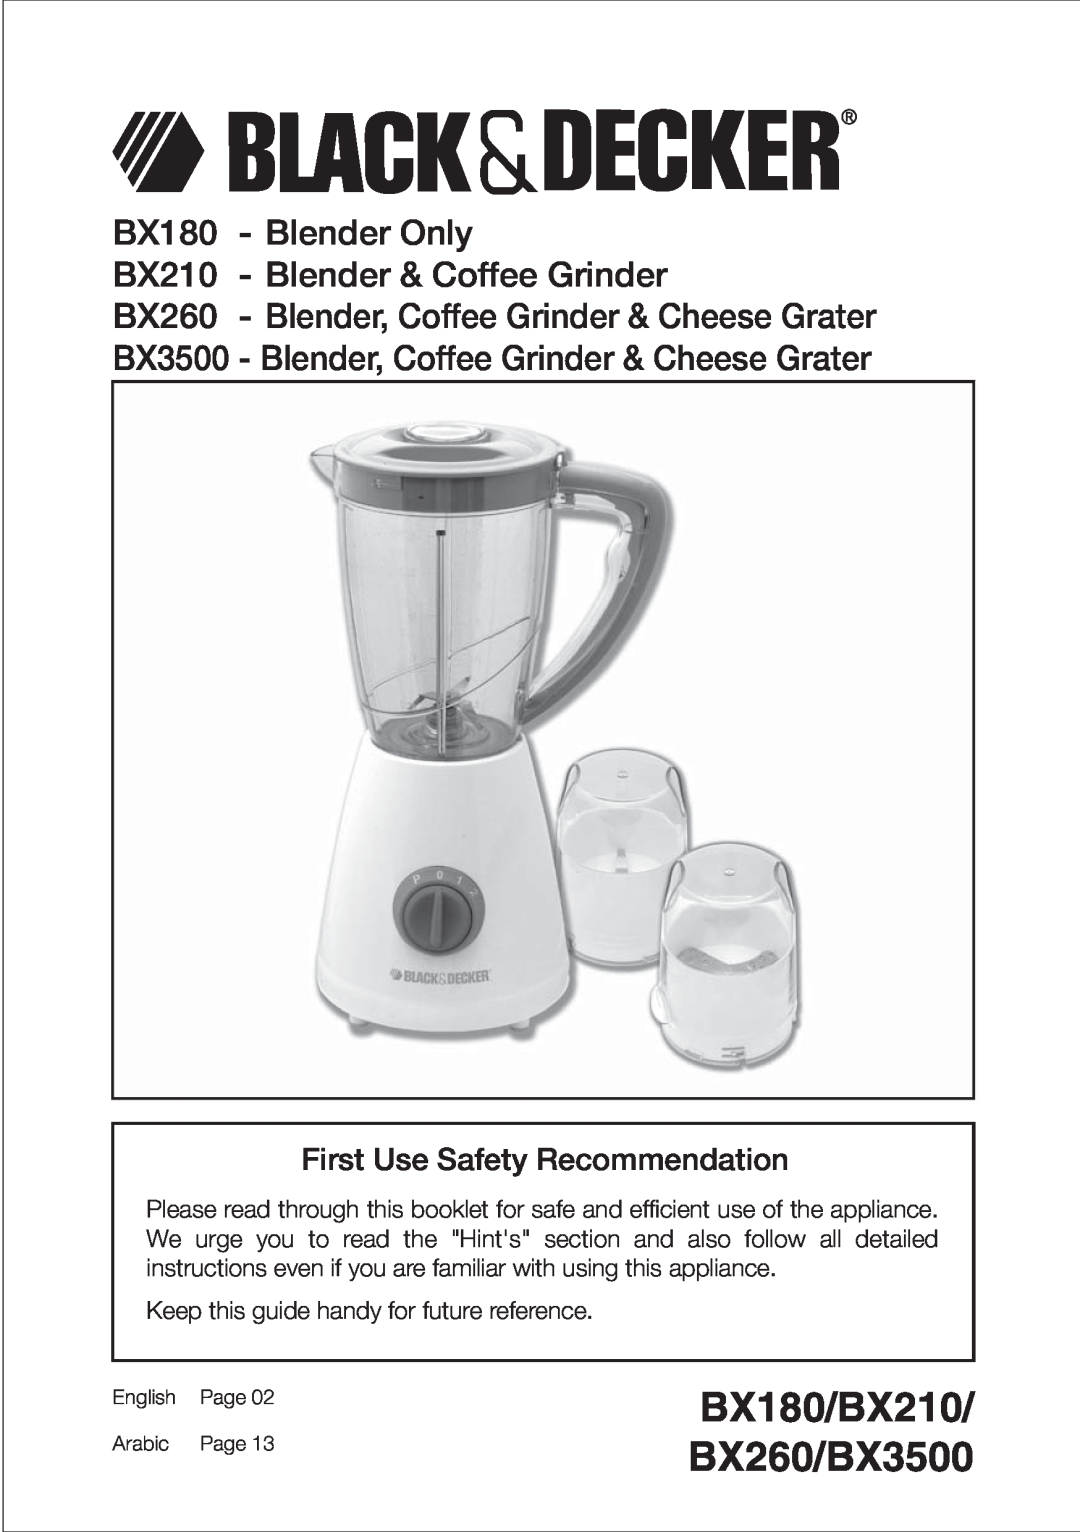 Black & Decker BX260 manual BX180 - Blender Only, BX210 - Blender & Coffee Grinder, First Use Safety Recommendation 